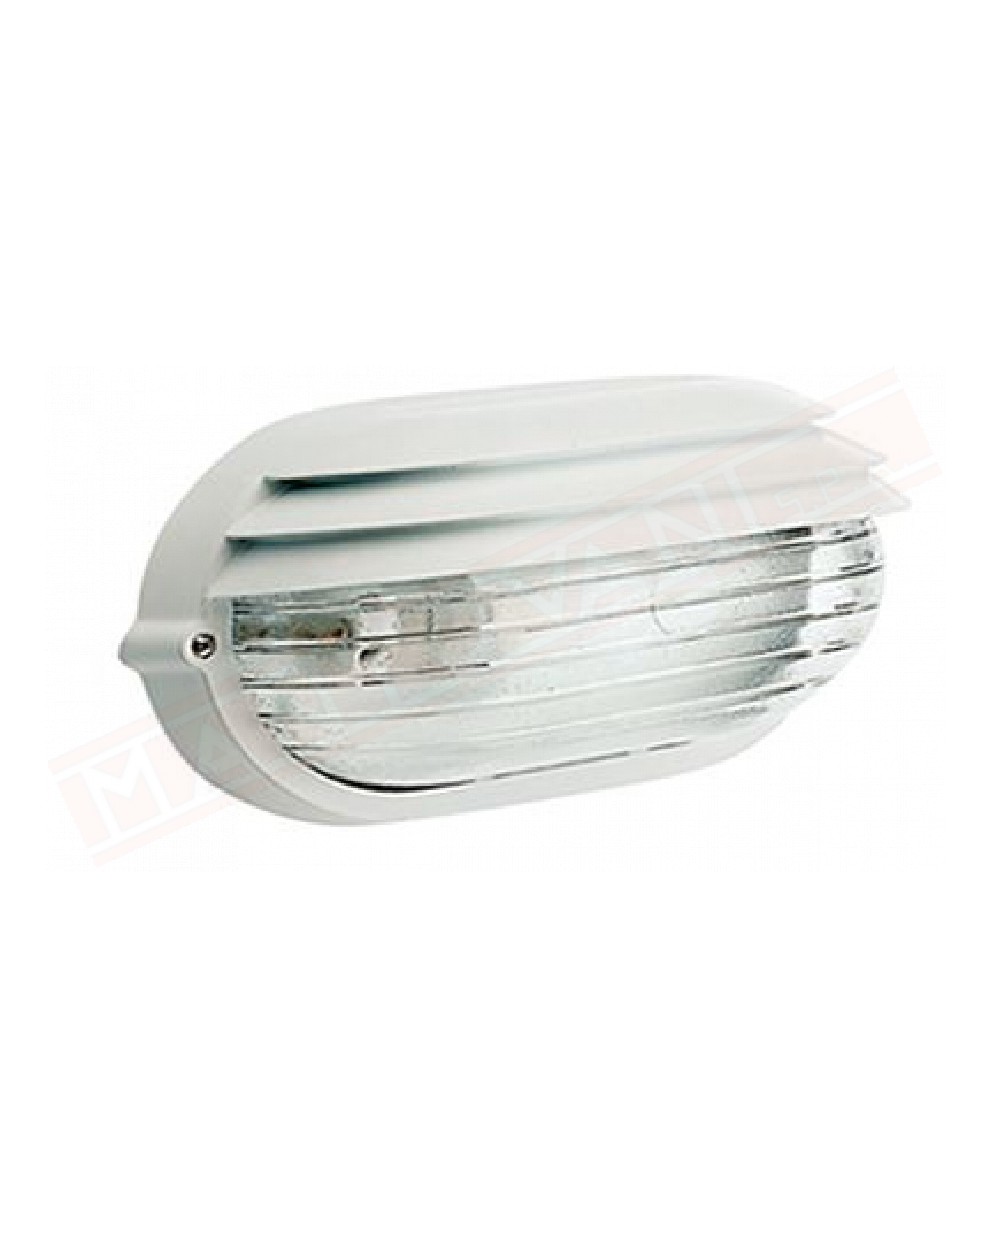 Palpebra ovale piccola applique a parete per esterni ip54 alluminio bianco e vetro cm 21.9 1x e27